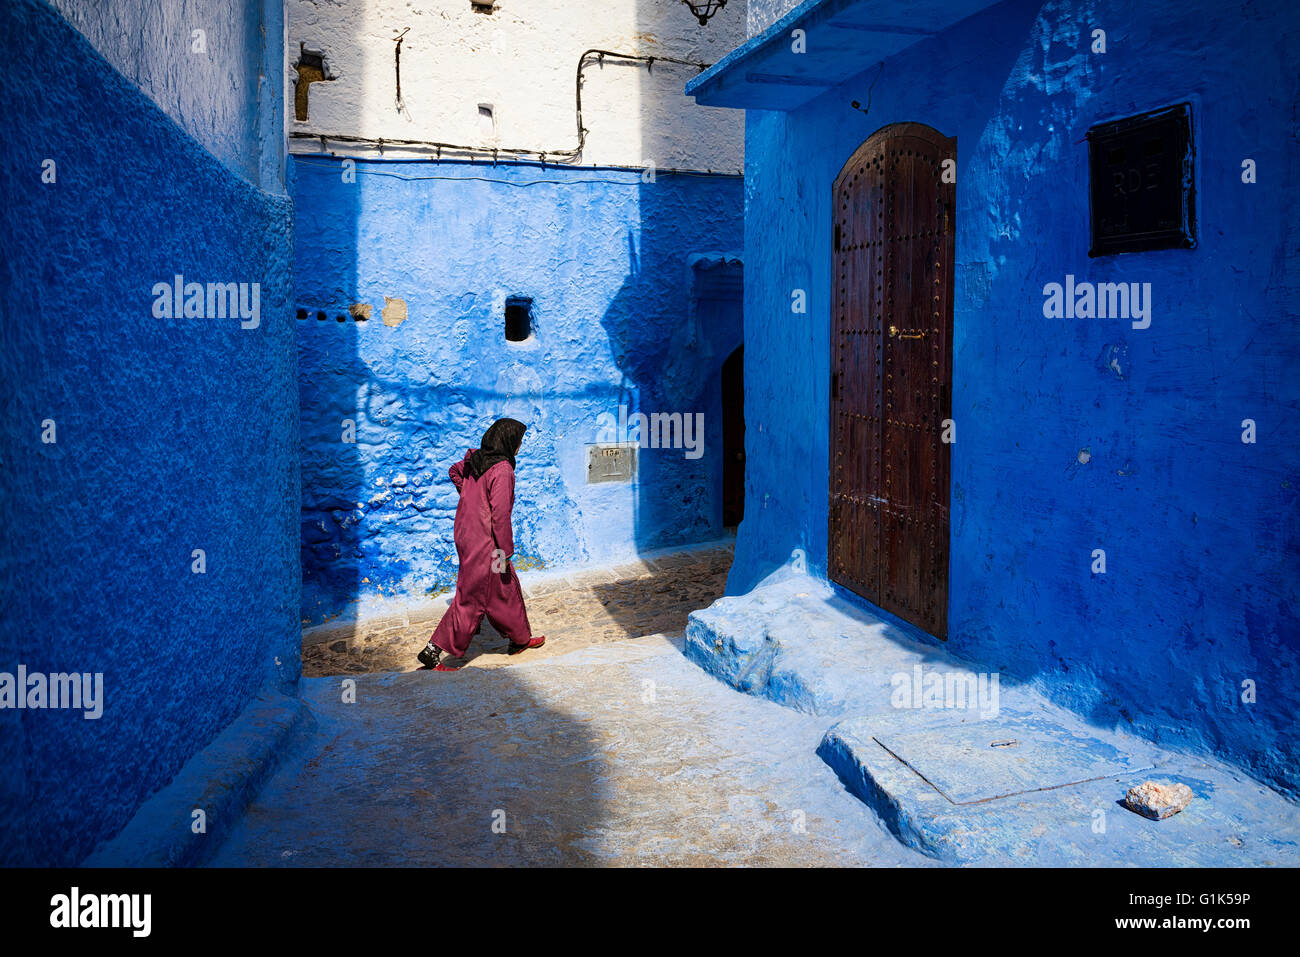 Chefchaouen, Maroc - 10 Avril 2016 : une femme marche dans une rue de la ville de Chefchaouen au Maroc. Banque D'Images